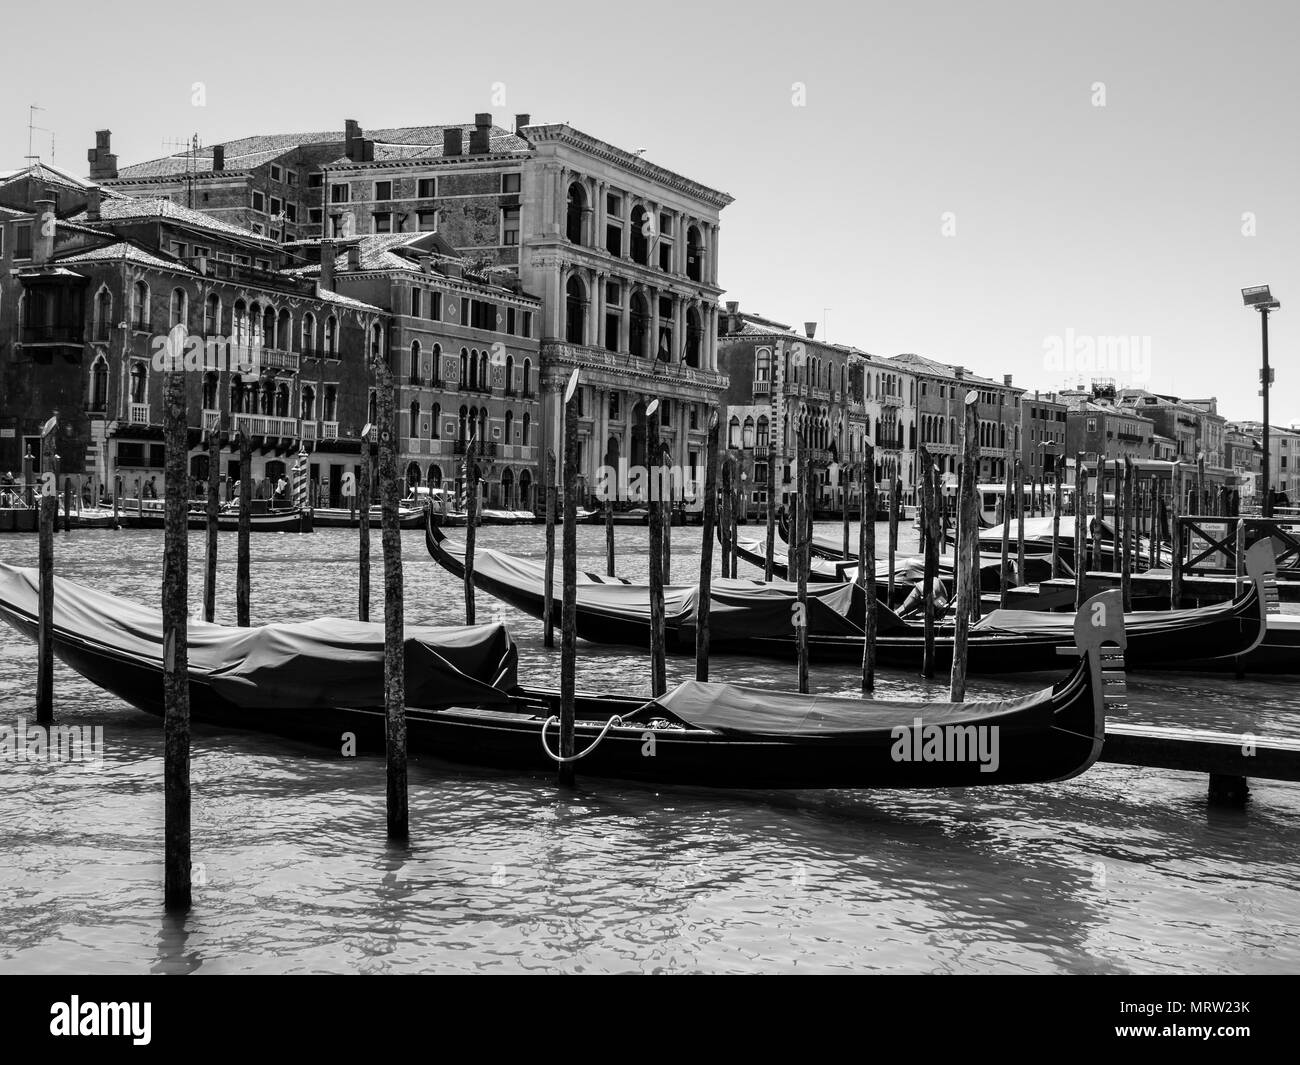 Gondola barche ancorate nei porti di Canal Grande nella Città di canali - Venezia, Italia Foto Stock